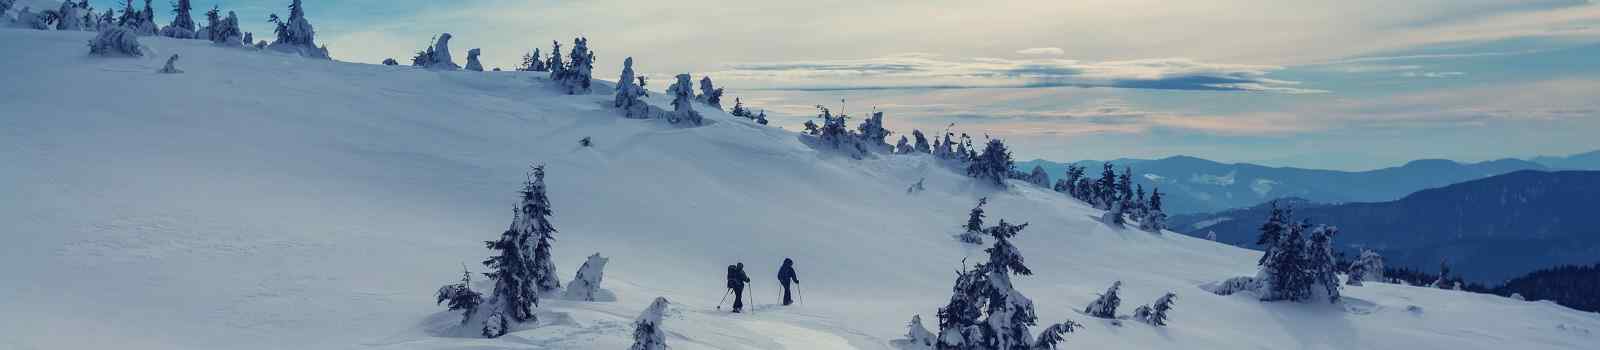 SCHNEESCHUHWANDERN-TEG  Hikers in the winter mountains shutterstock 534857782